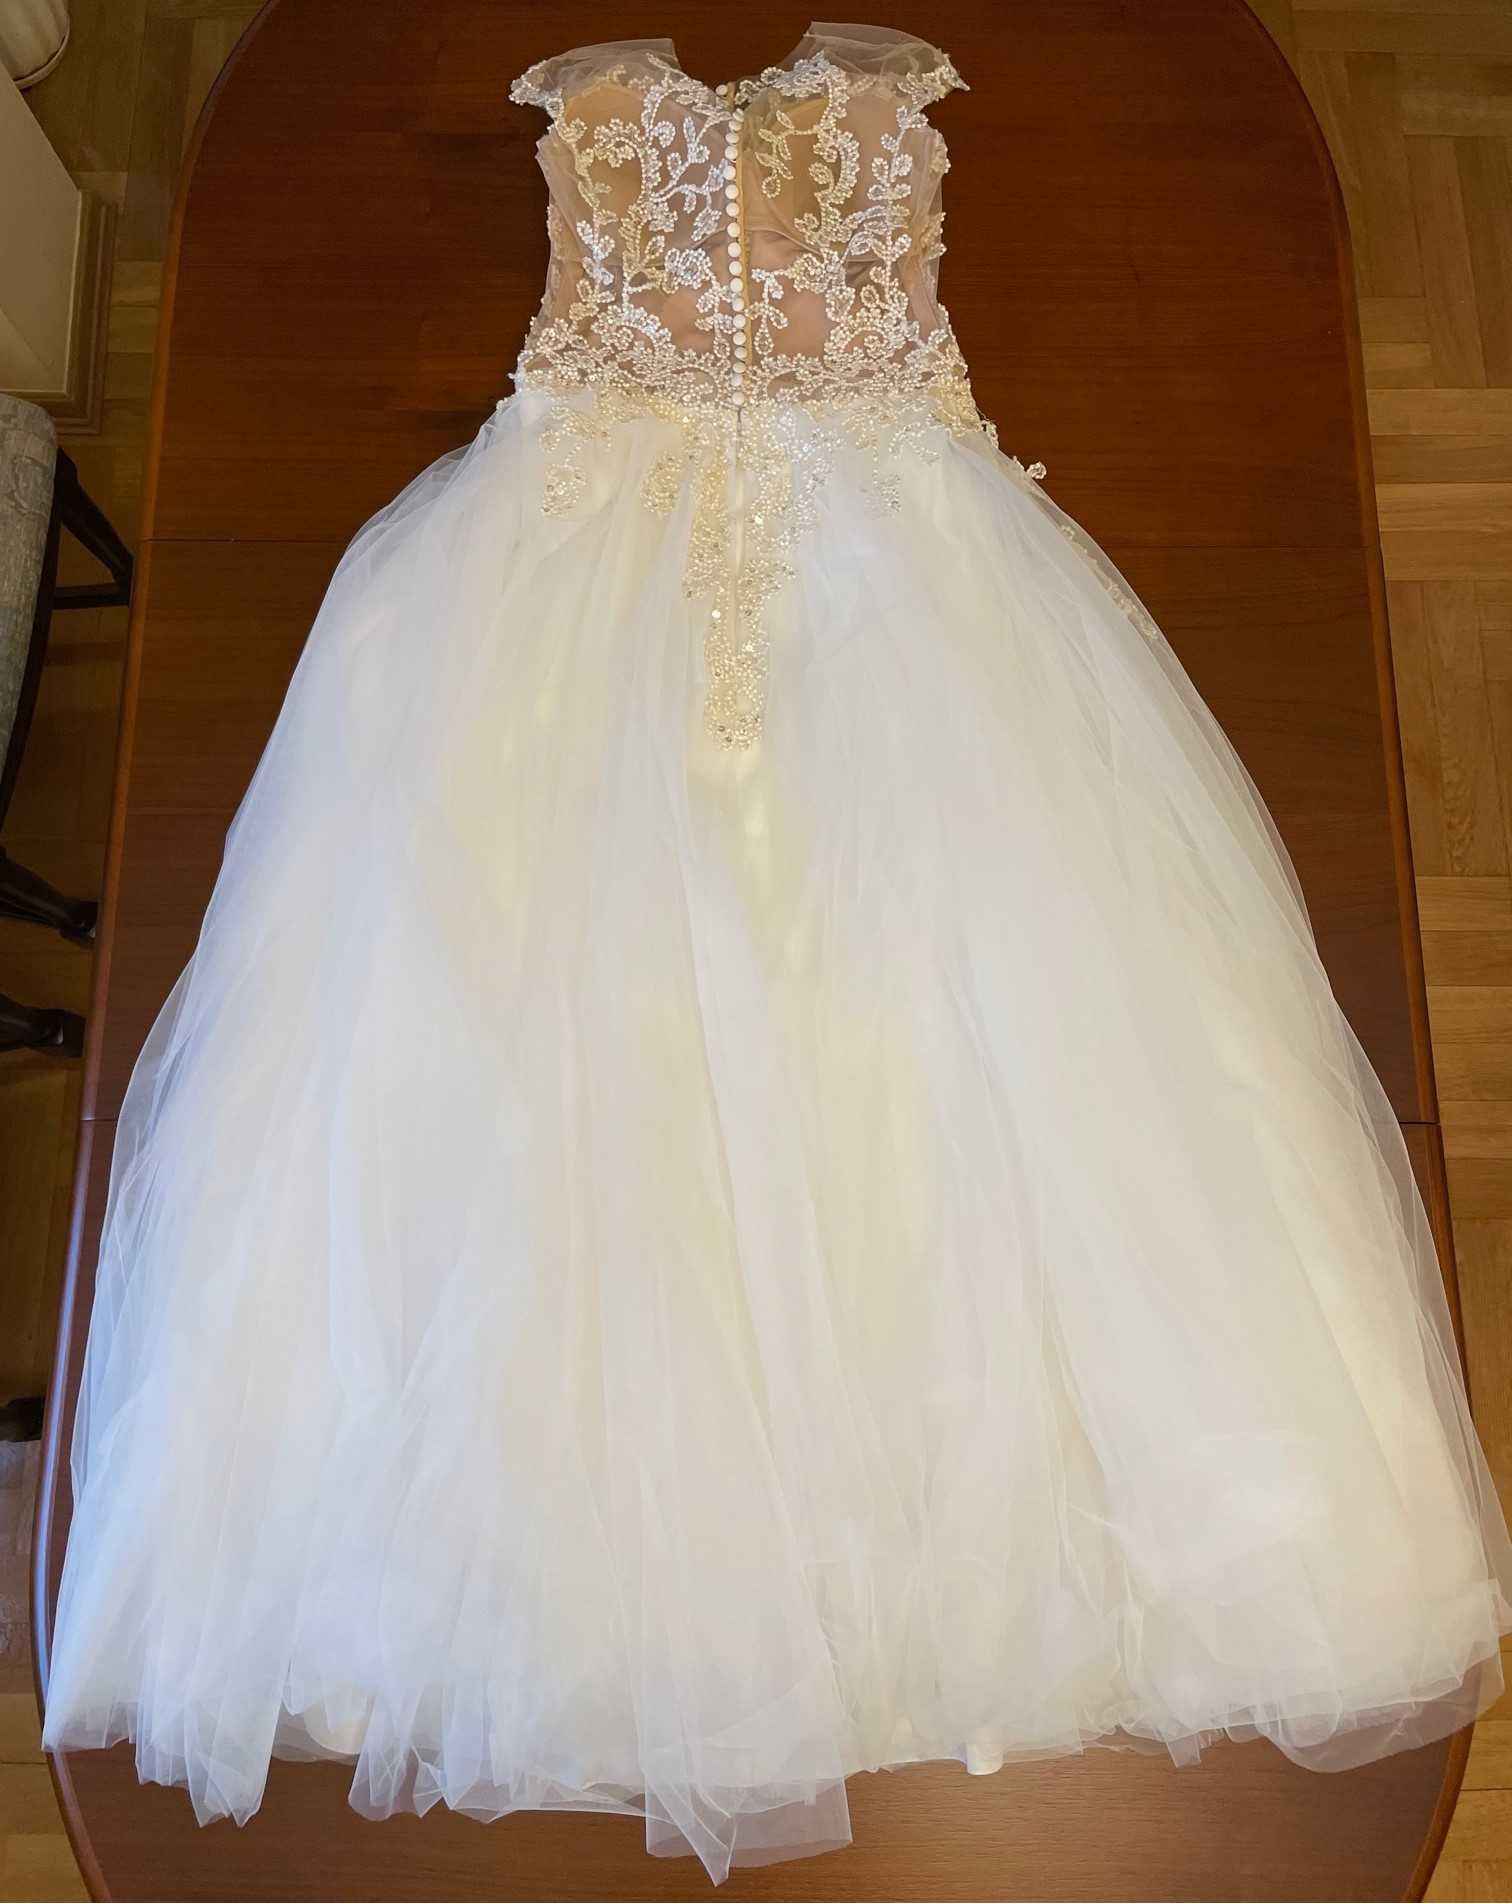 Piękna suknia ślubna - projekt Catarina Kordas - okazja!